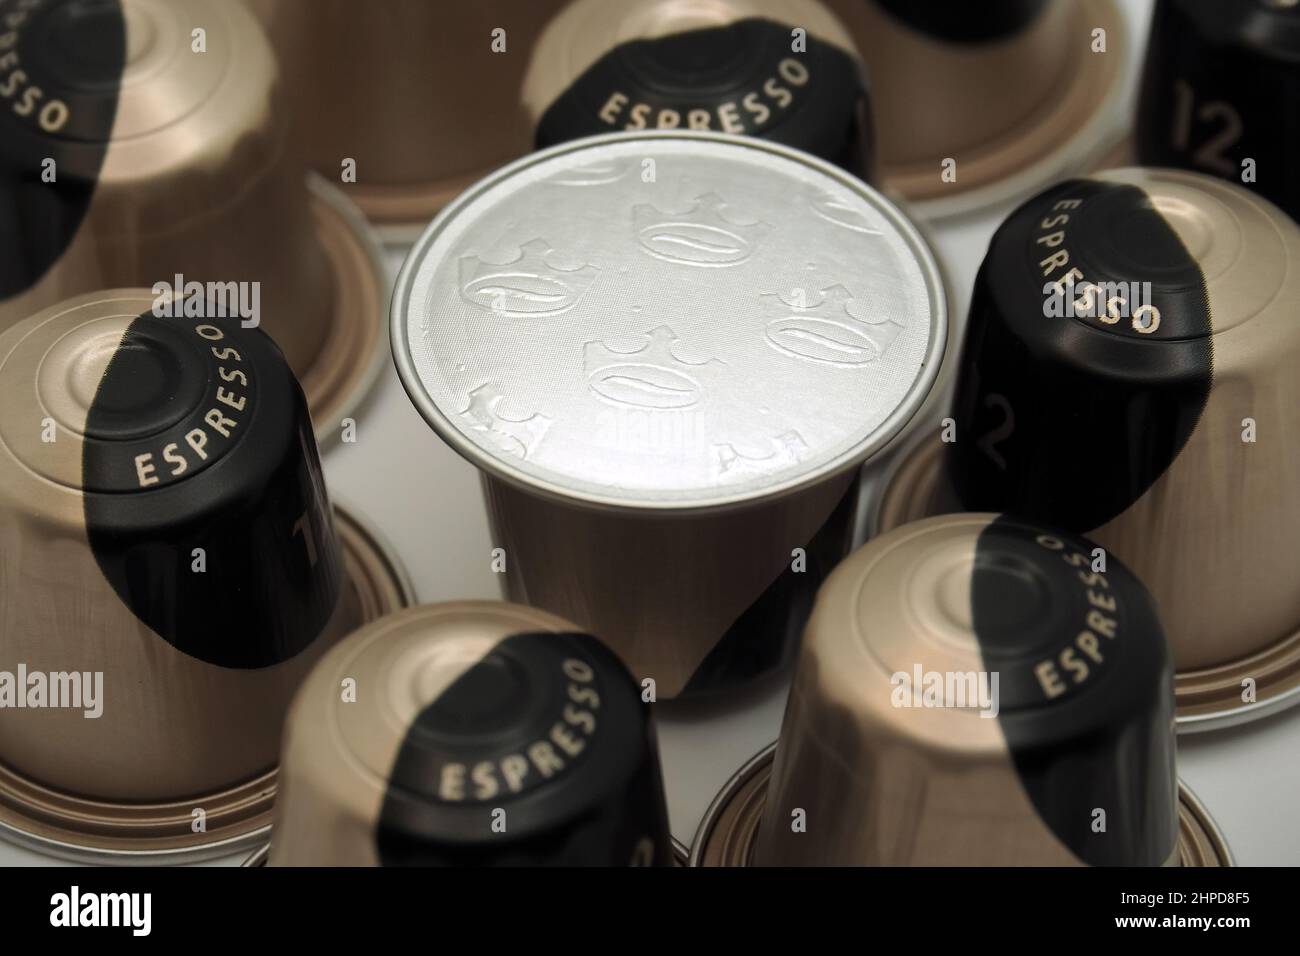 Jacobs espresso café capsules, est une marque de café qui remonte à 1895 en Allemagne Banque D'Images